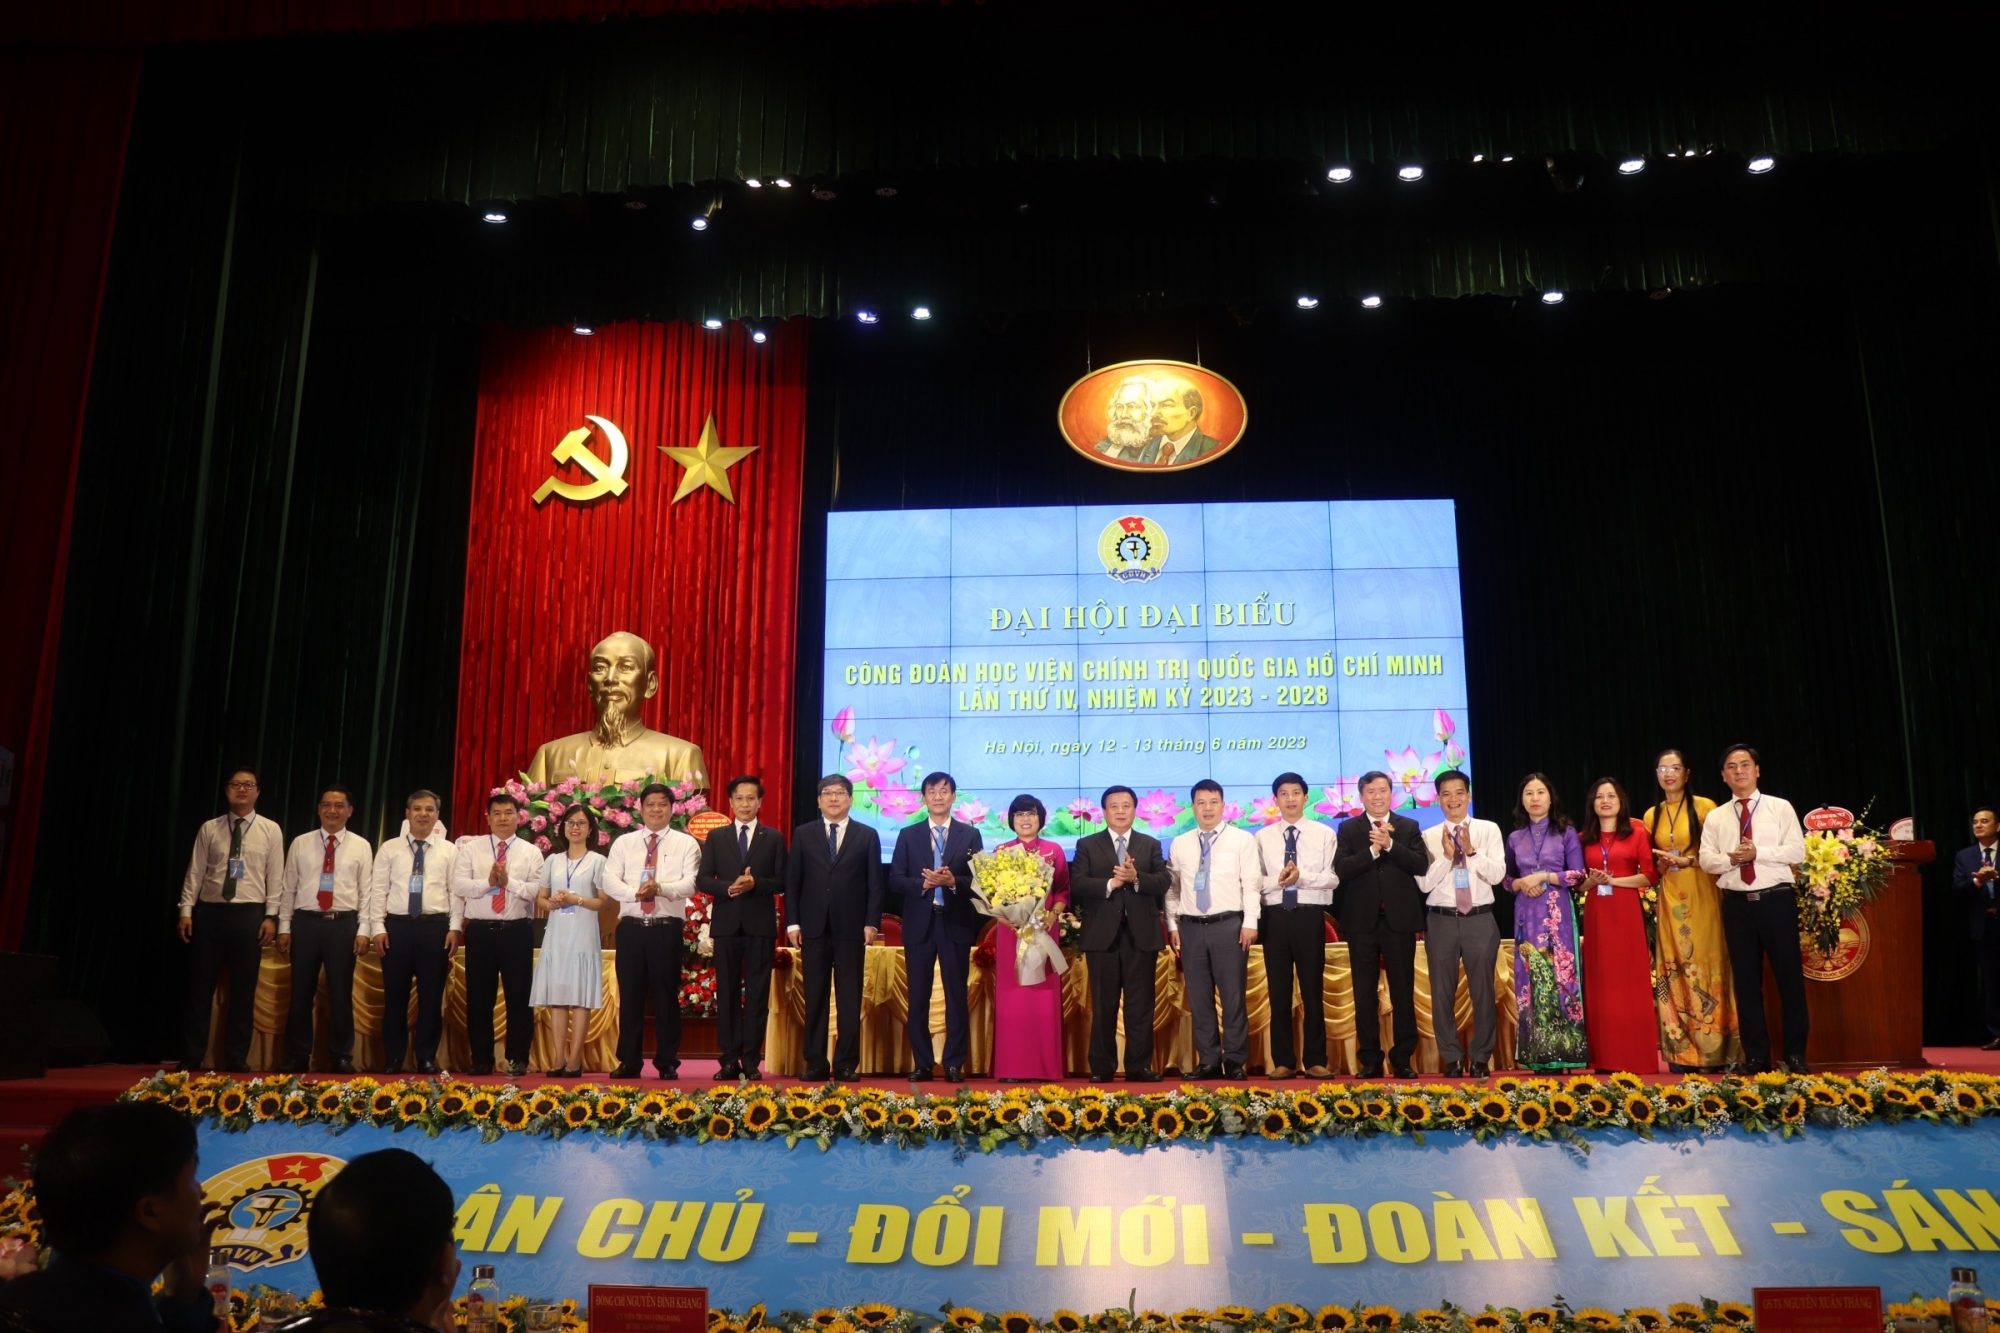 Đại hội điểm: Công đoàn Học viện Chính trị quốc gia Hồ Chí Minh  lần thứ IV, nhiệm kỳ 2023-2028